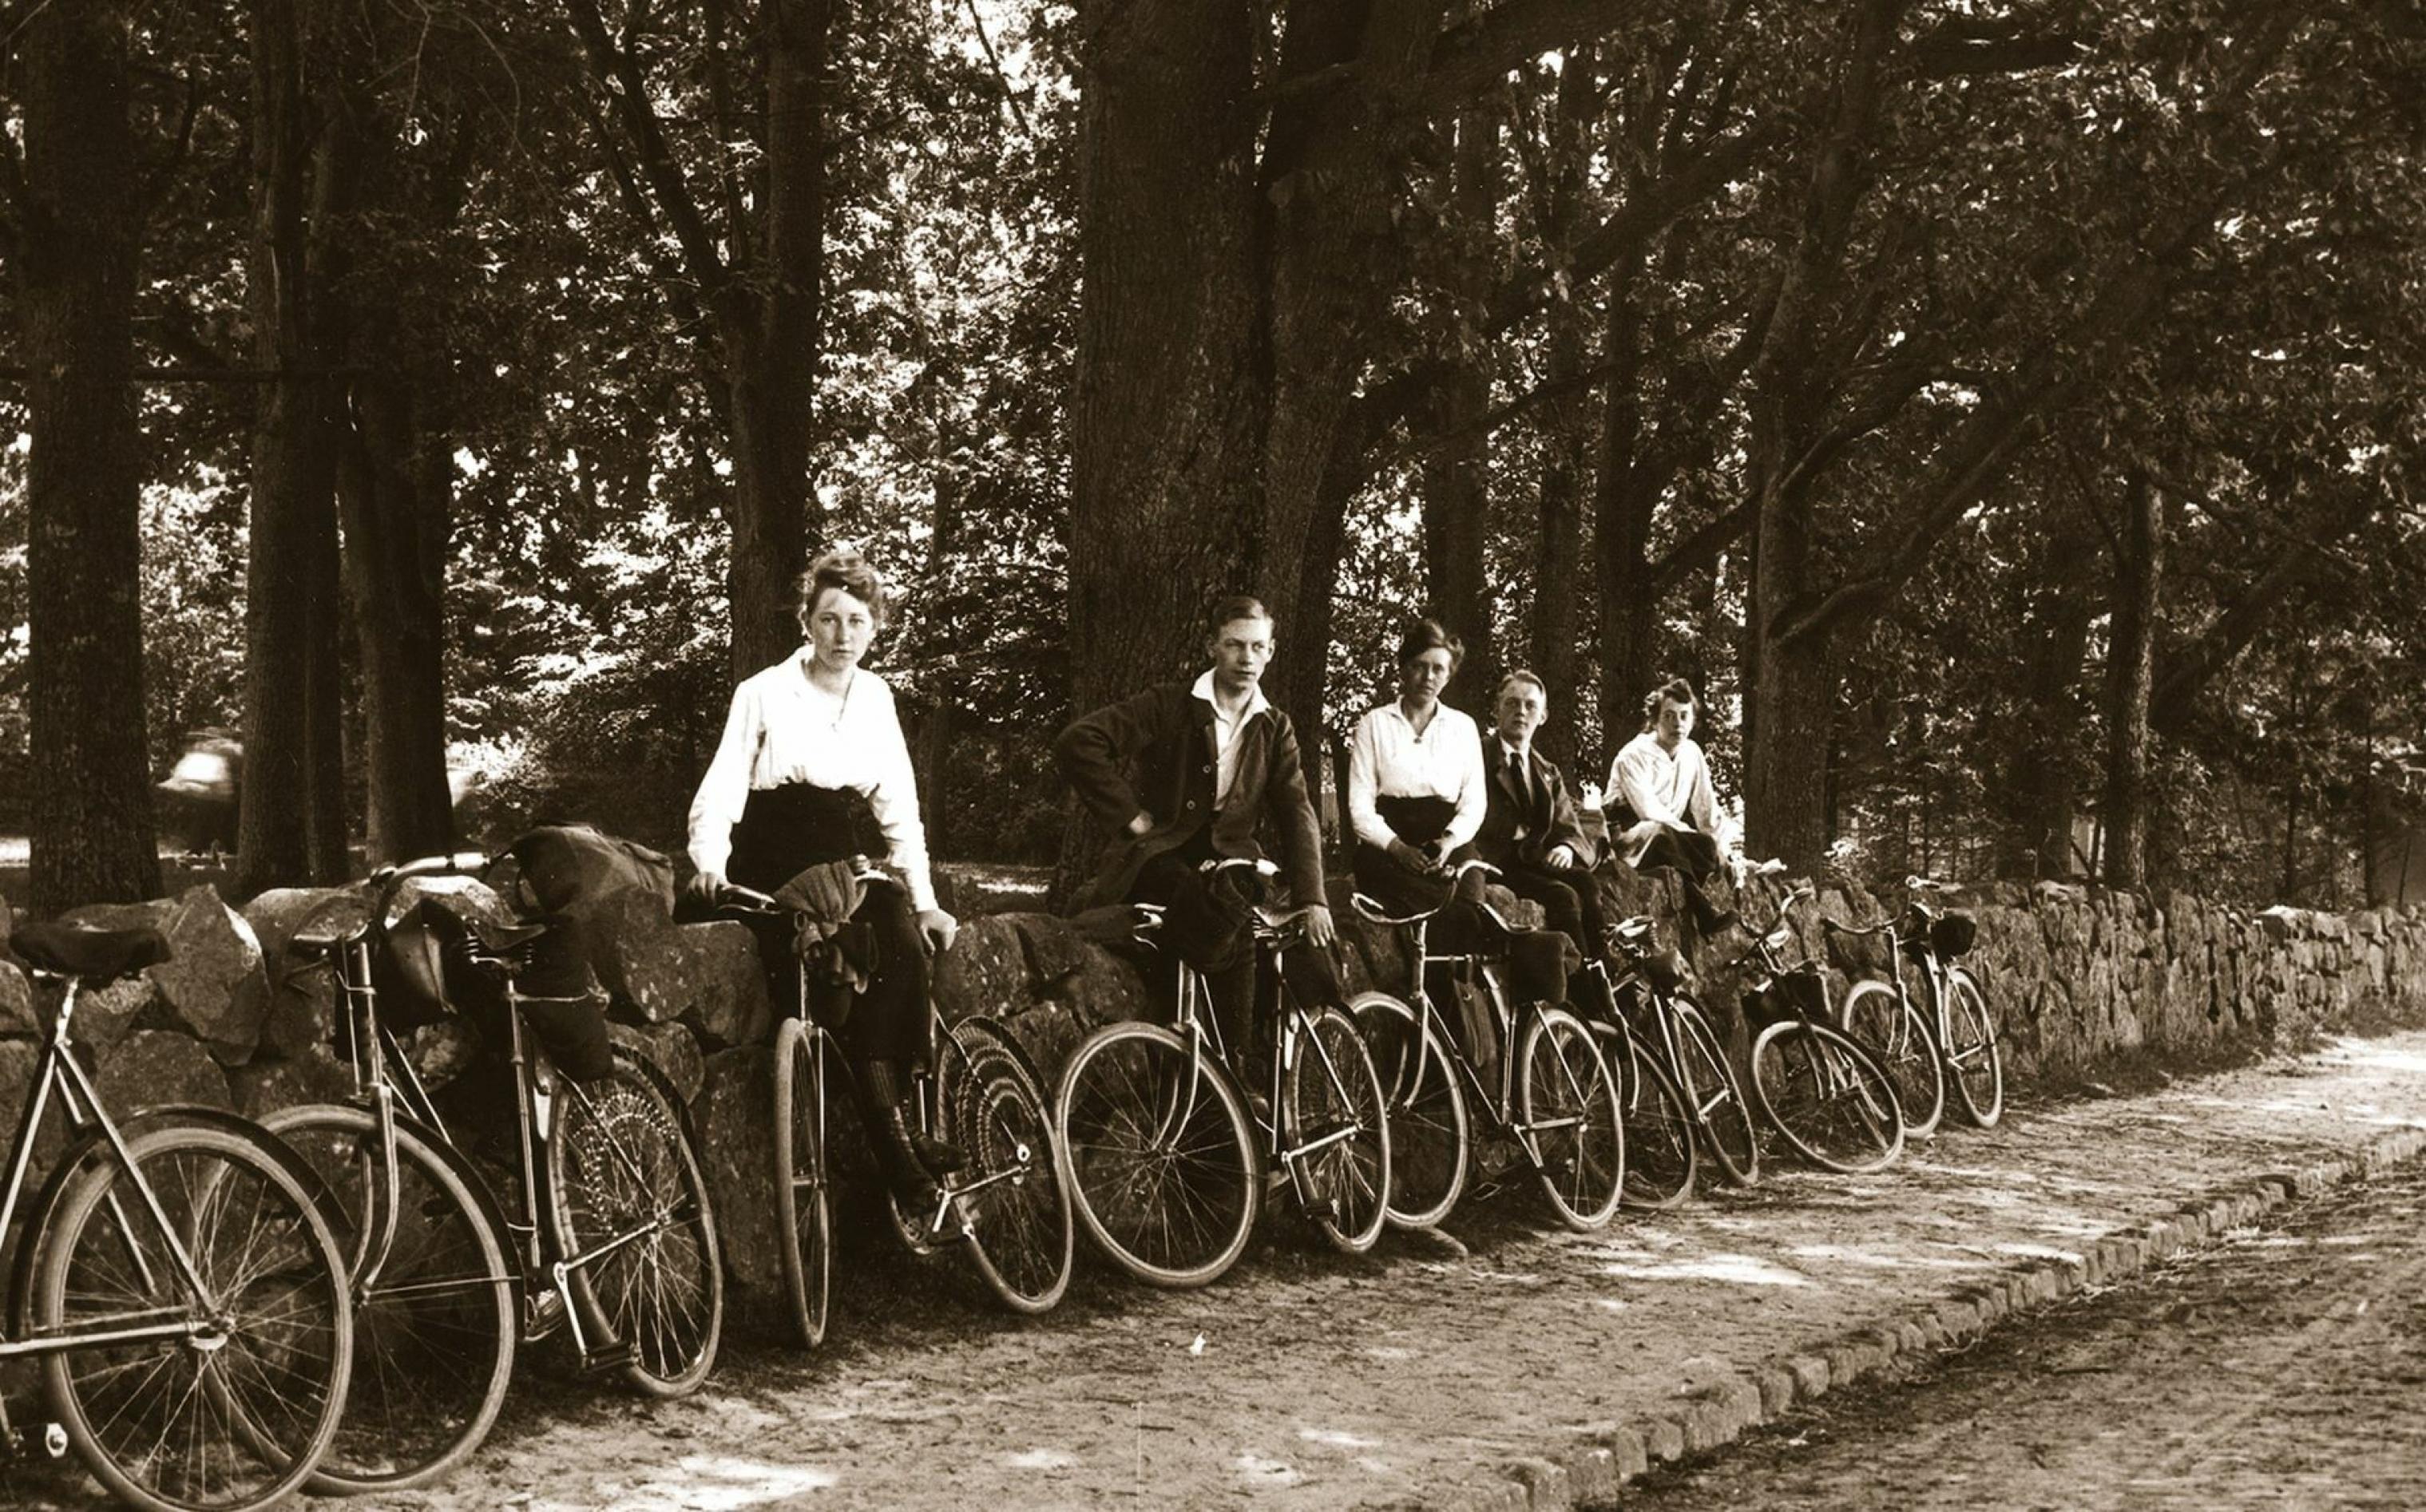 Frauen und Männer sowie etliche Fahrräder lehnen an der Mauer neben einer baumgesäumten Straße außerhalb von Hamburg.